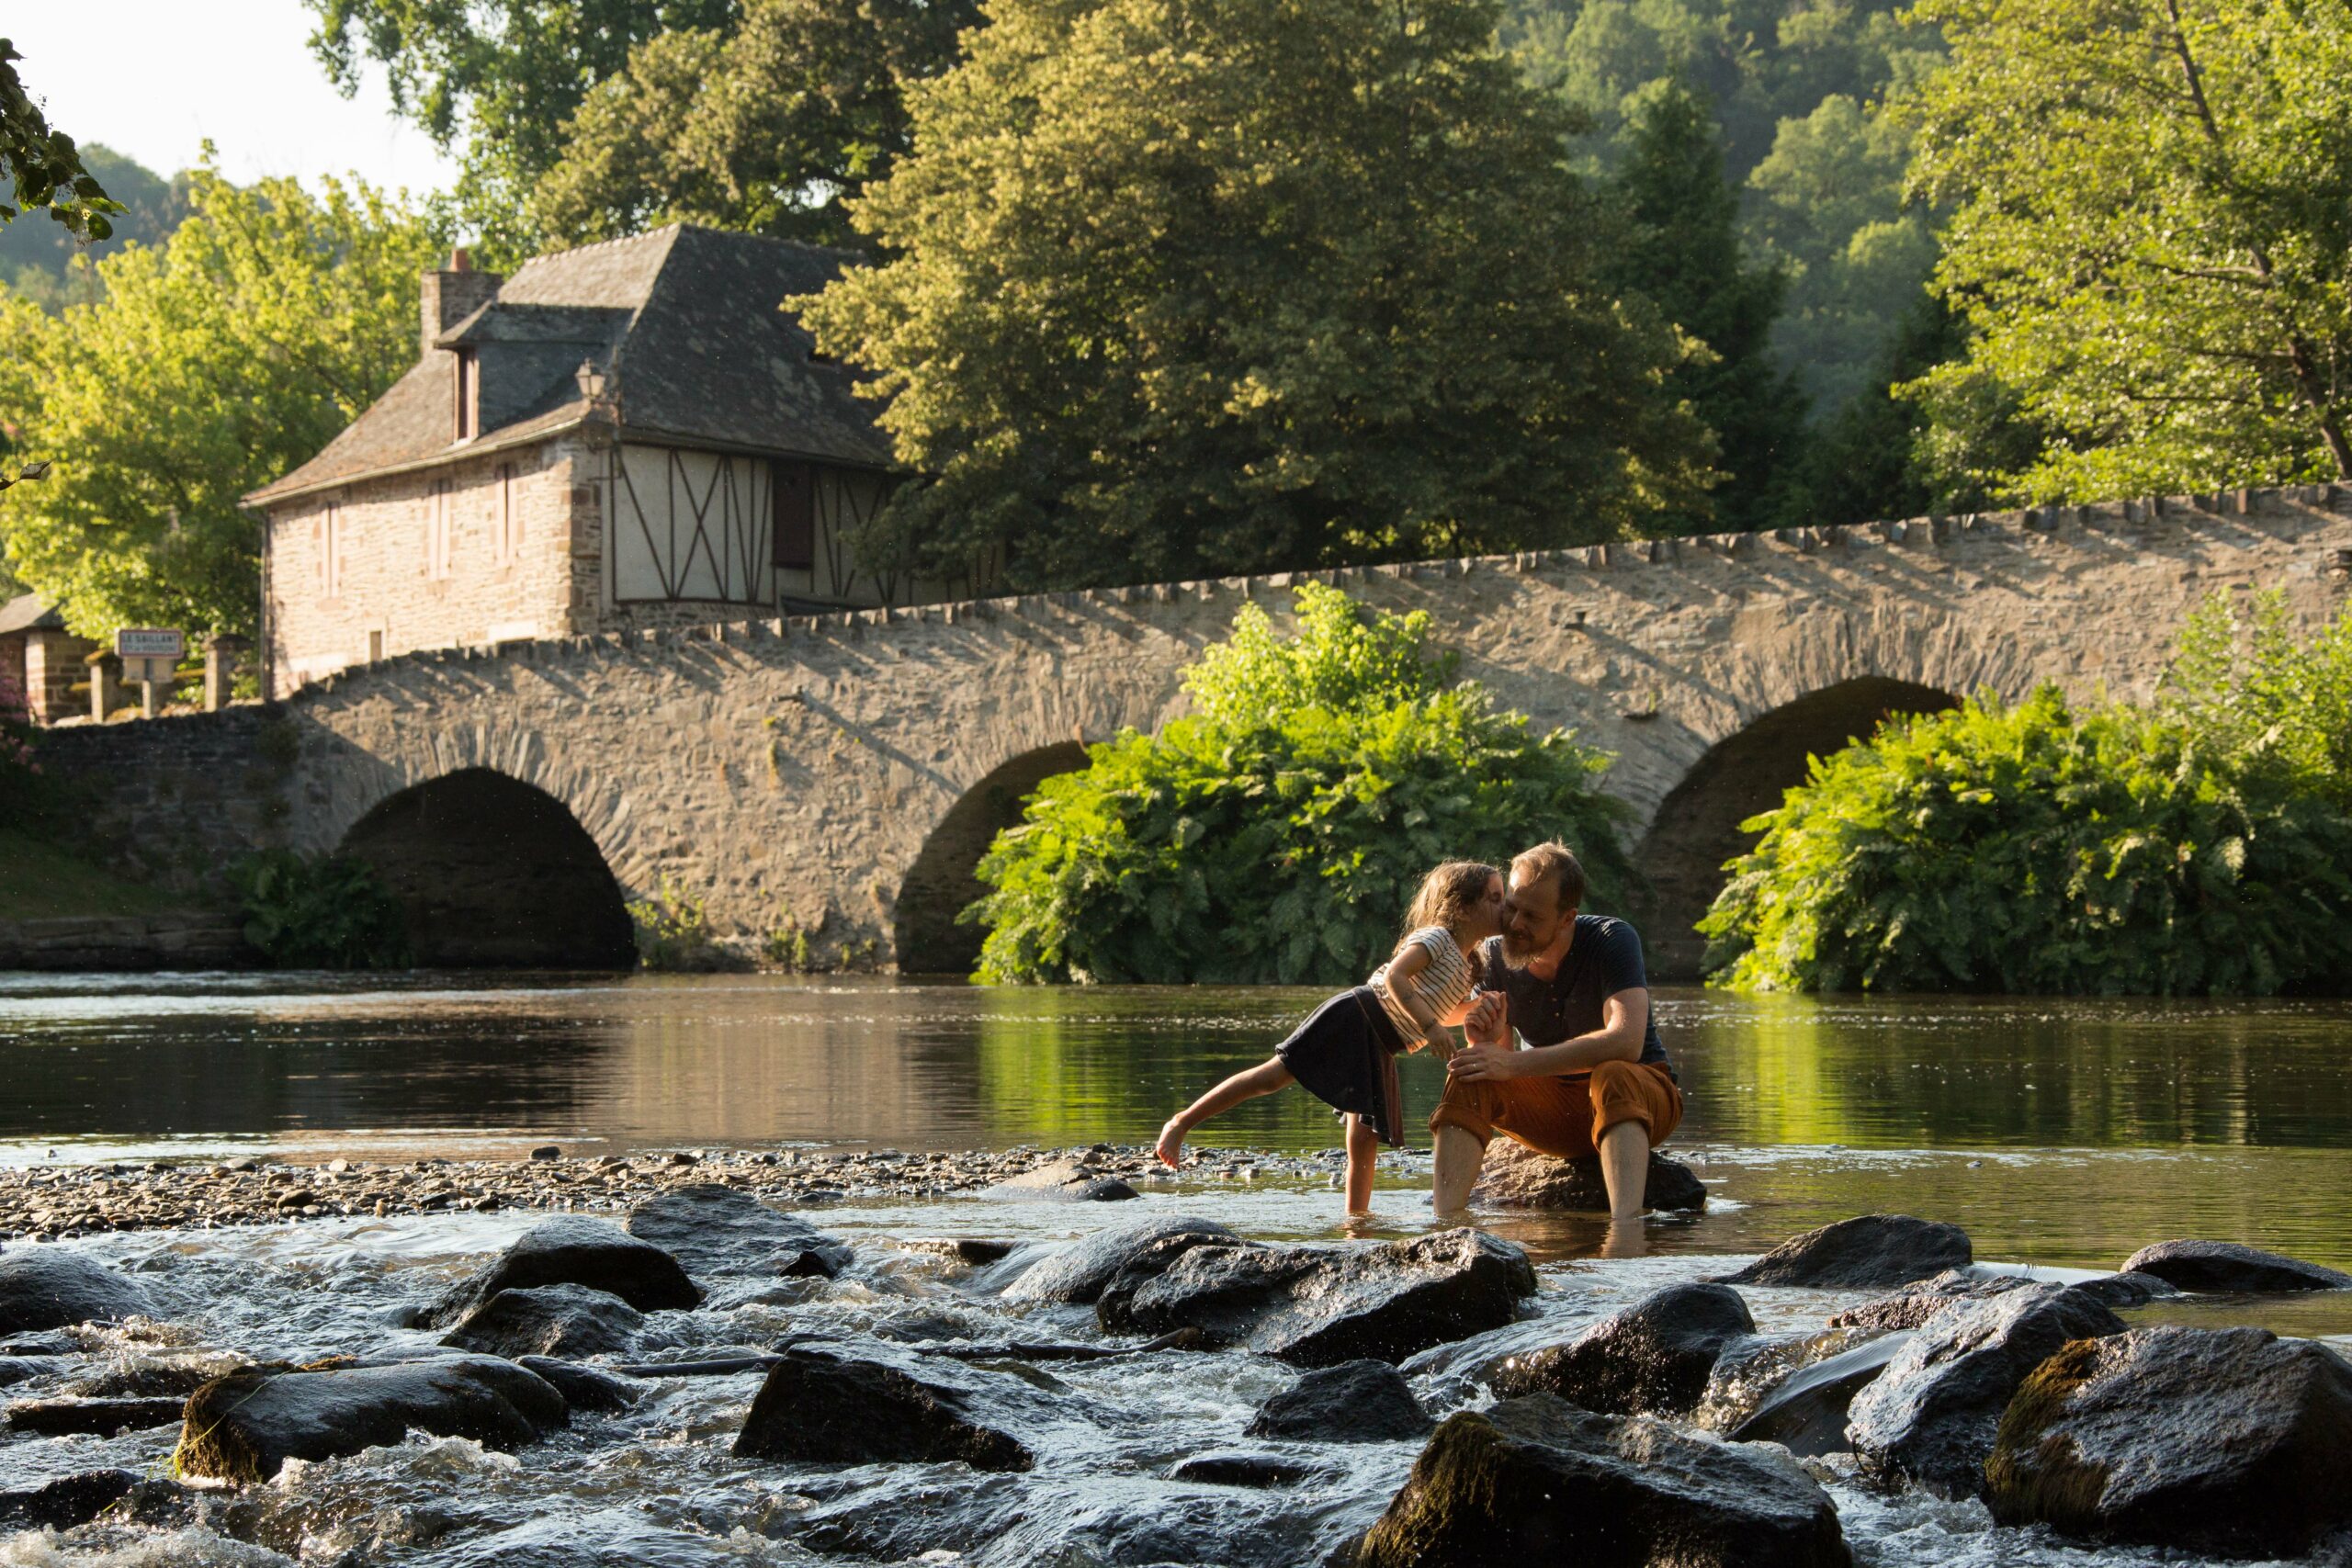 Vue de la rivière qui traverse le village de Le Saillant, avec une vieille maison et un pont en pierre, et deux personnes les pieds dans l'eau, lors d'un séjour dans la région de Brive